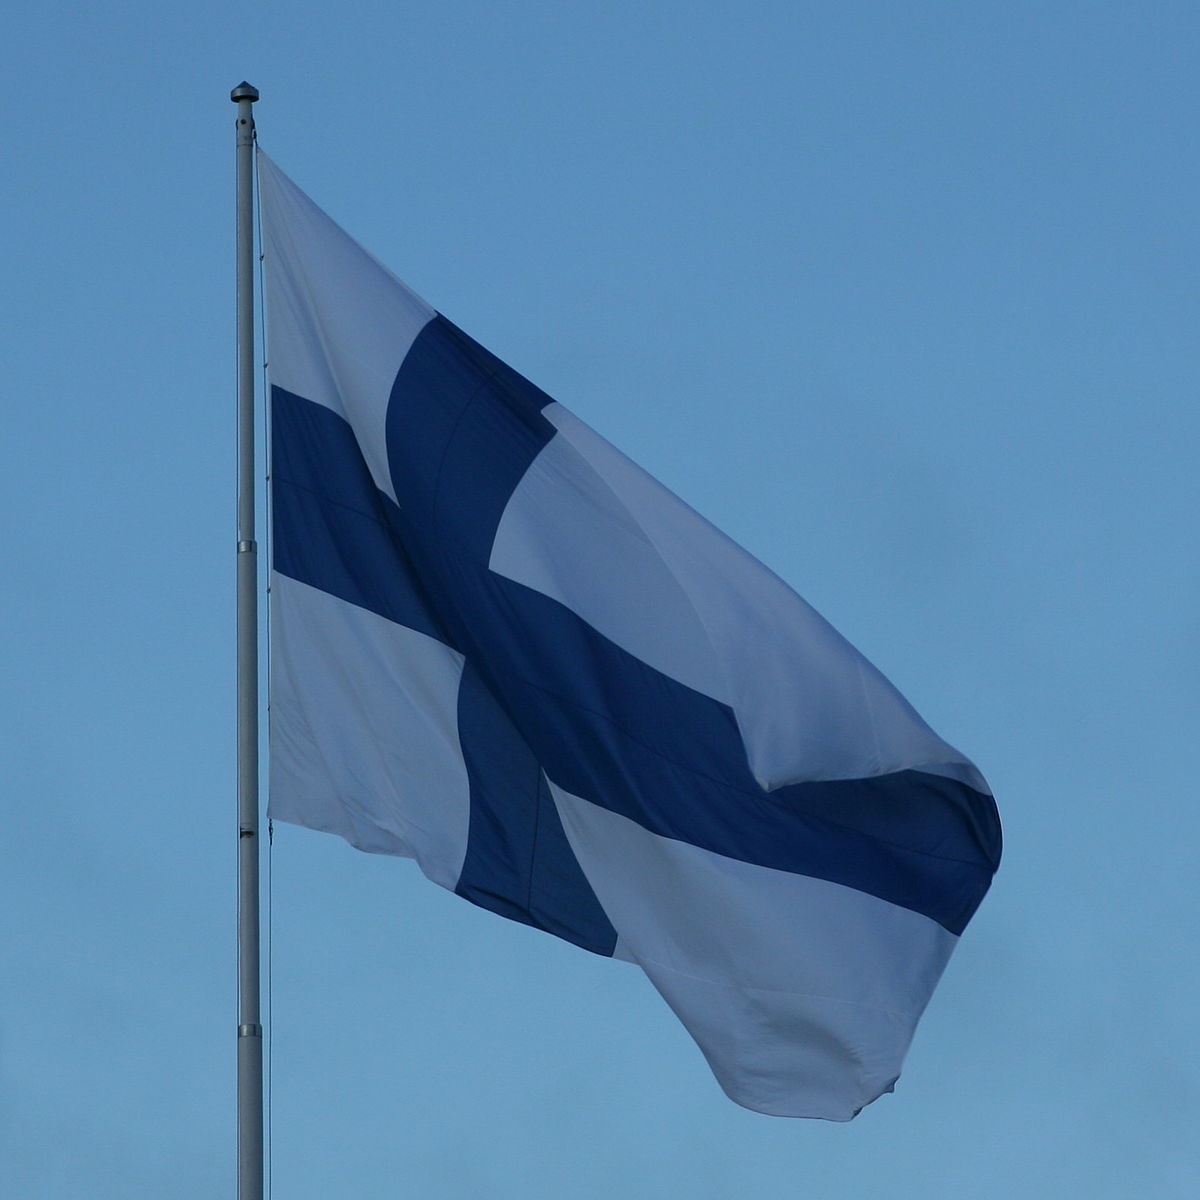 Suomen tulee itsenäistyä oikeasti, eikä tyytyä sen illuusioon.